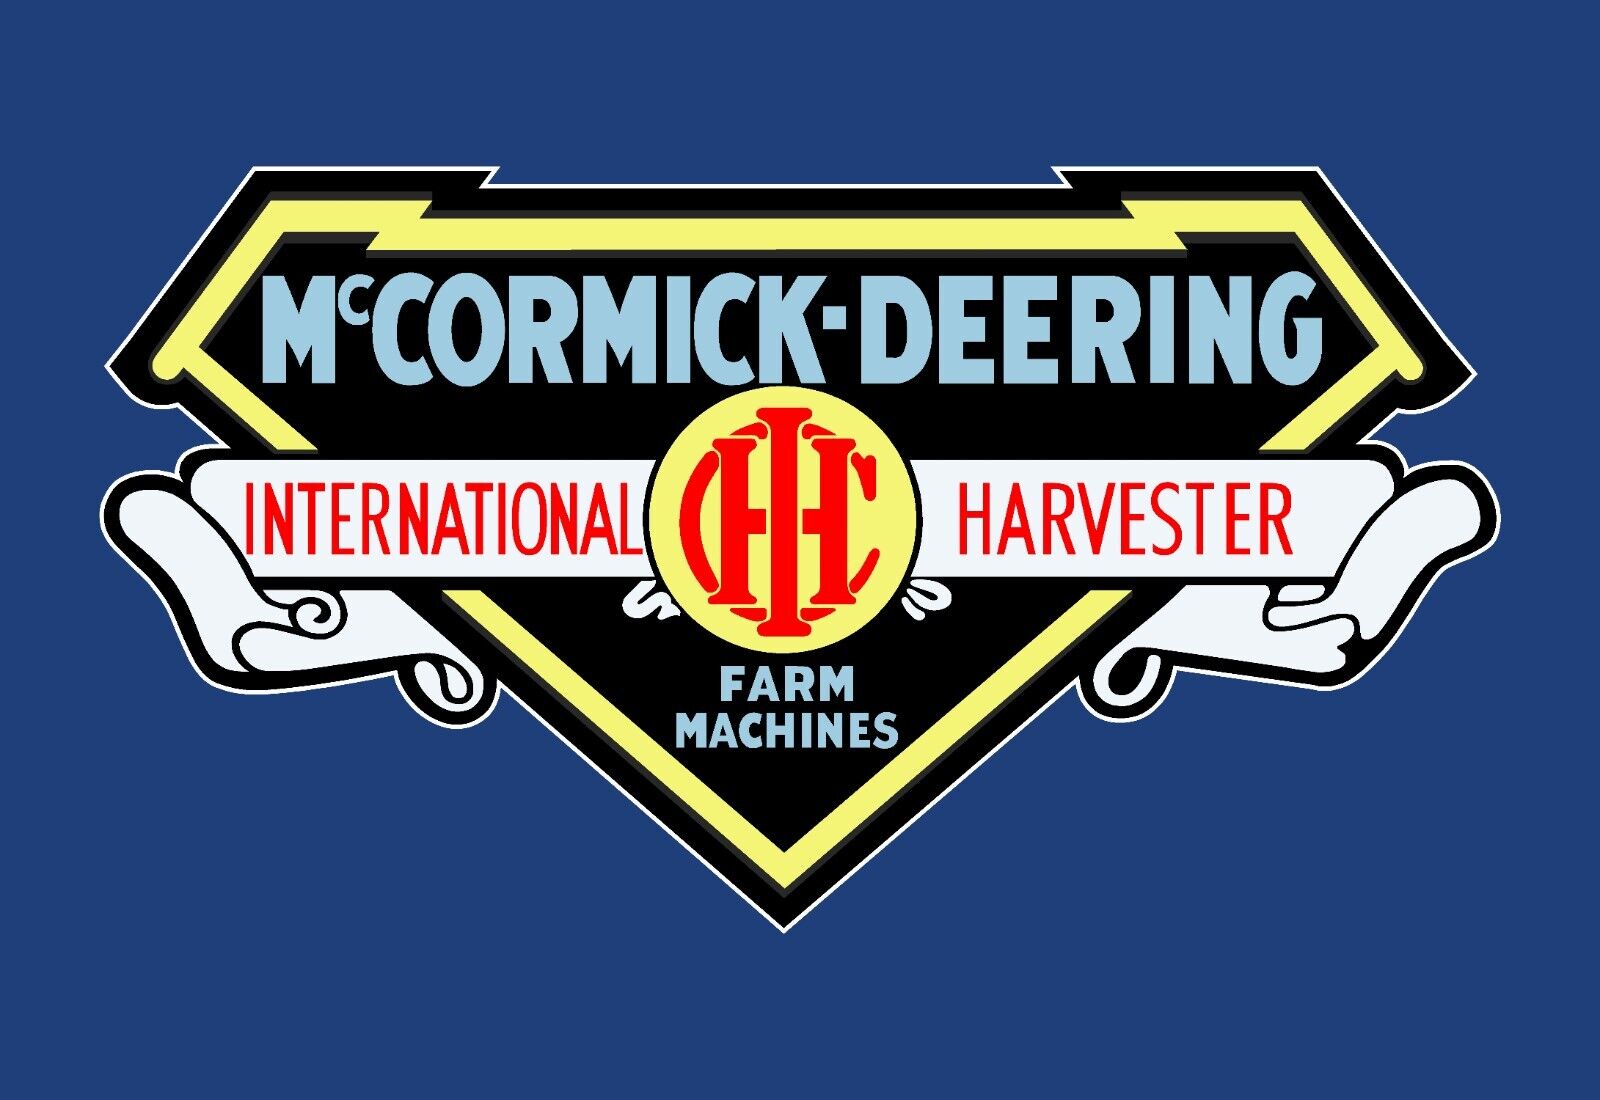 McCormick - Deering 1927 Vintage - Emblem International Harvester Sticker Decal